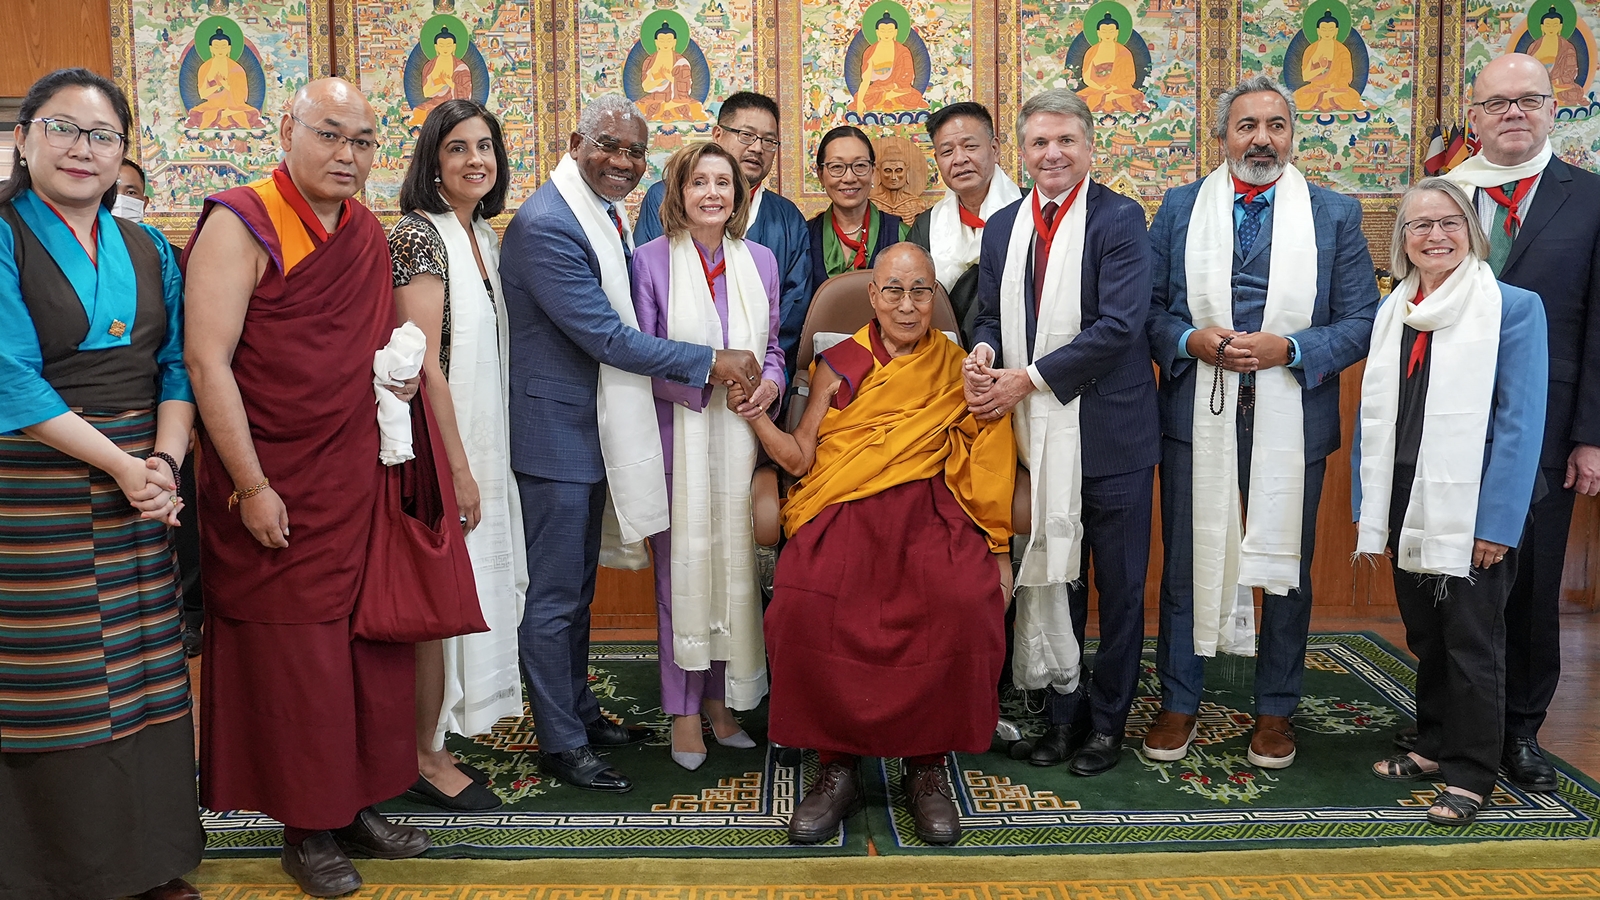 O legado do Dalai Lama continuará vivo e Xi irá embora, diz Pelosi